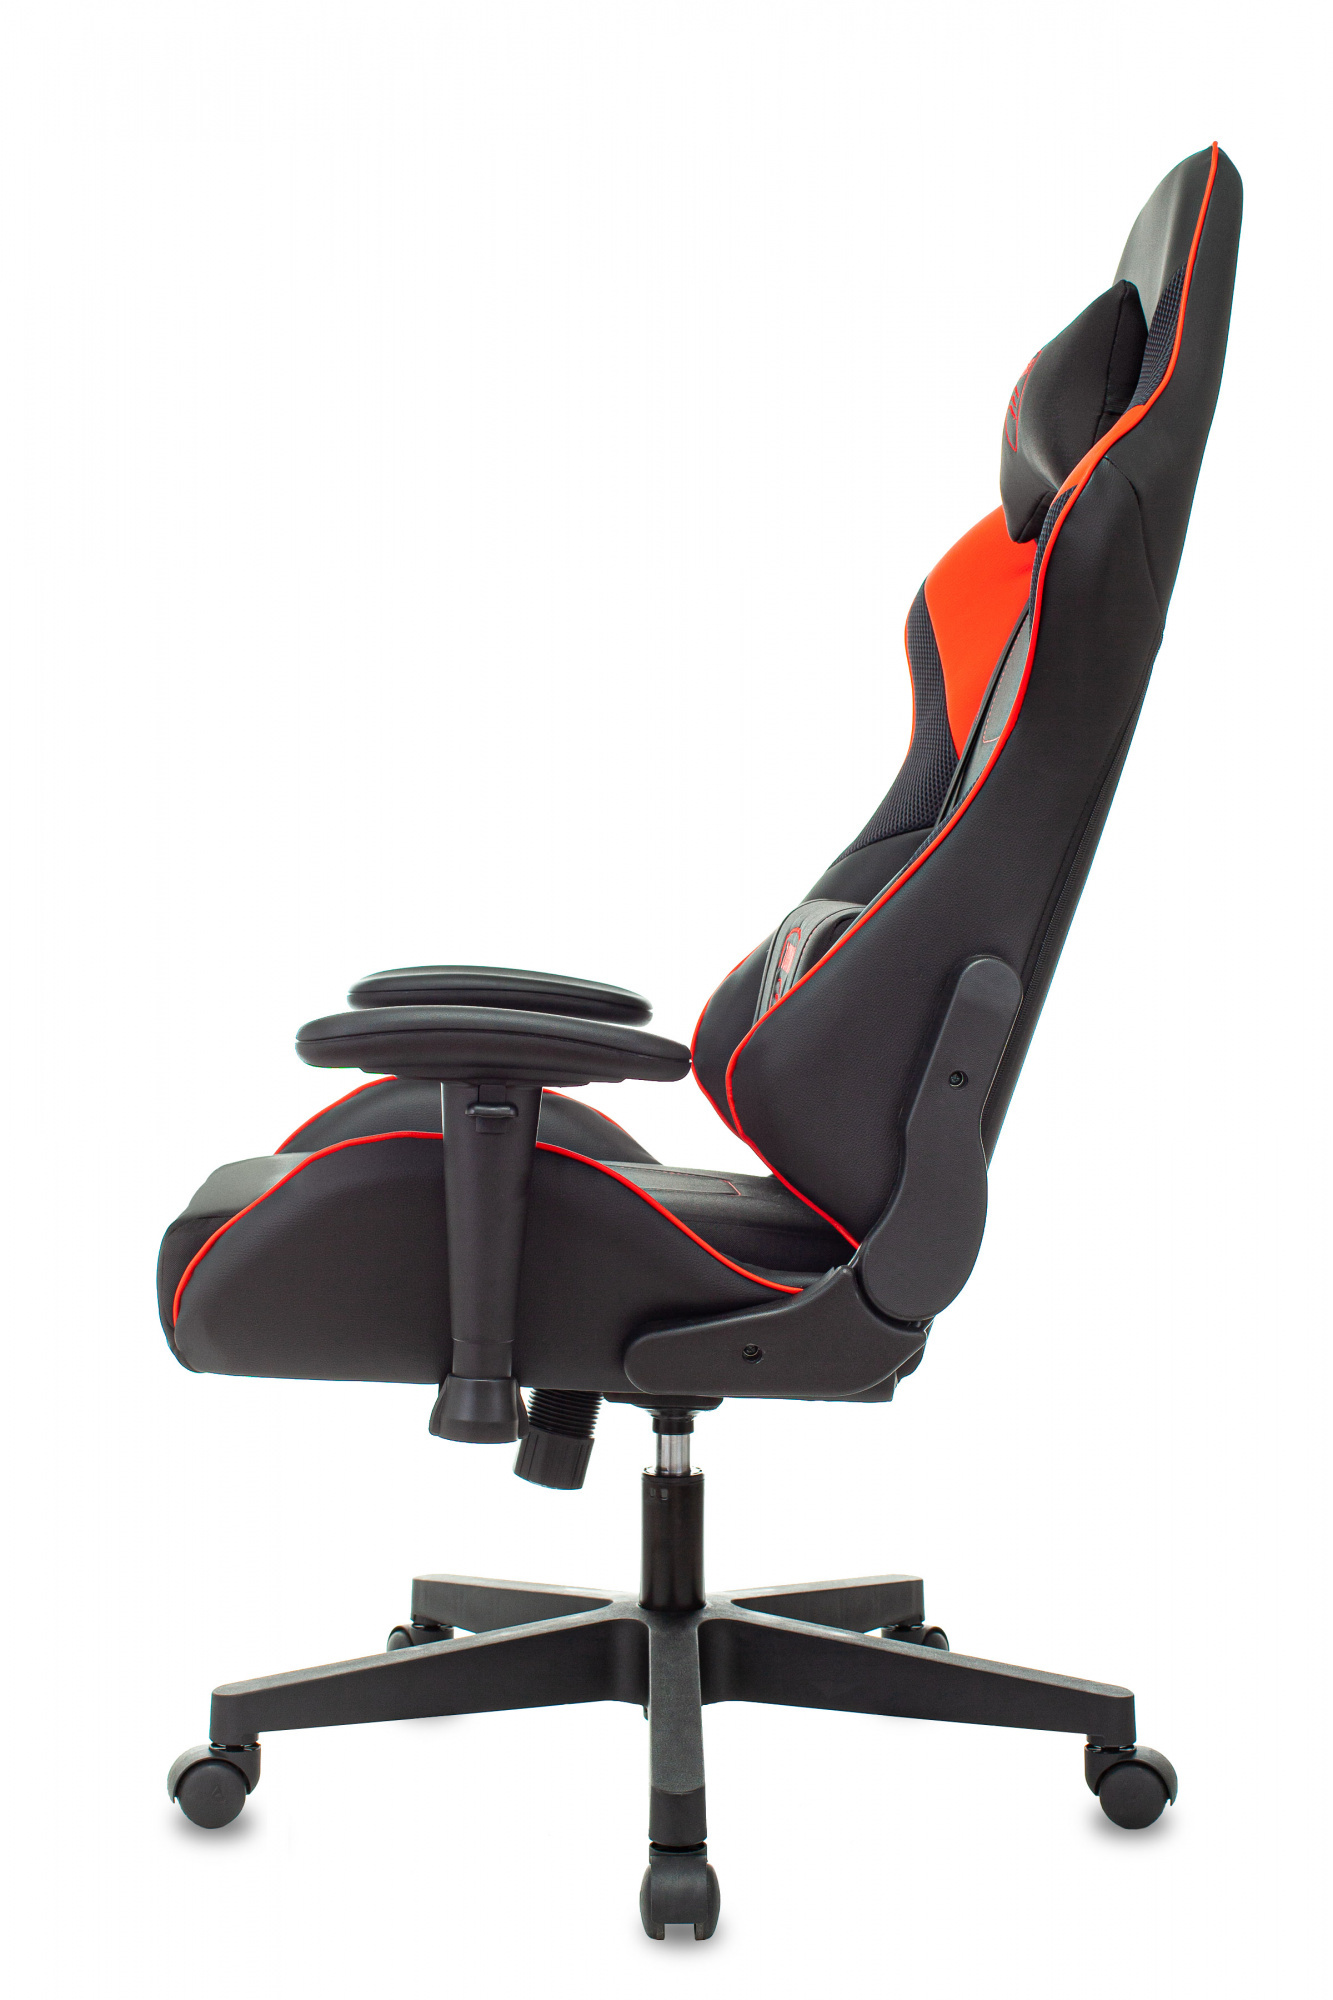 Кресло игровое Zombie Thunder 1, обивка: ткань/экокожа, цвет: черный/красный (ZOMBIE THUNDER 1 RD) от магазина Buro.store